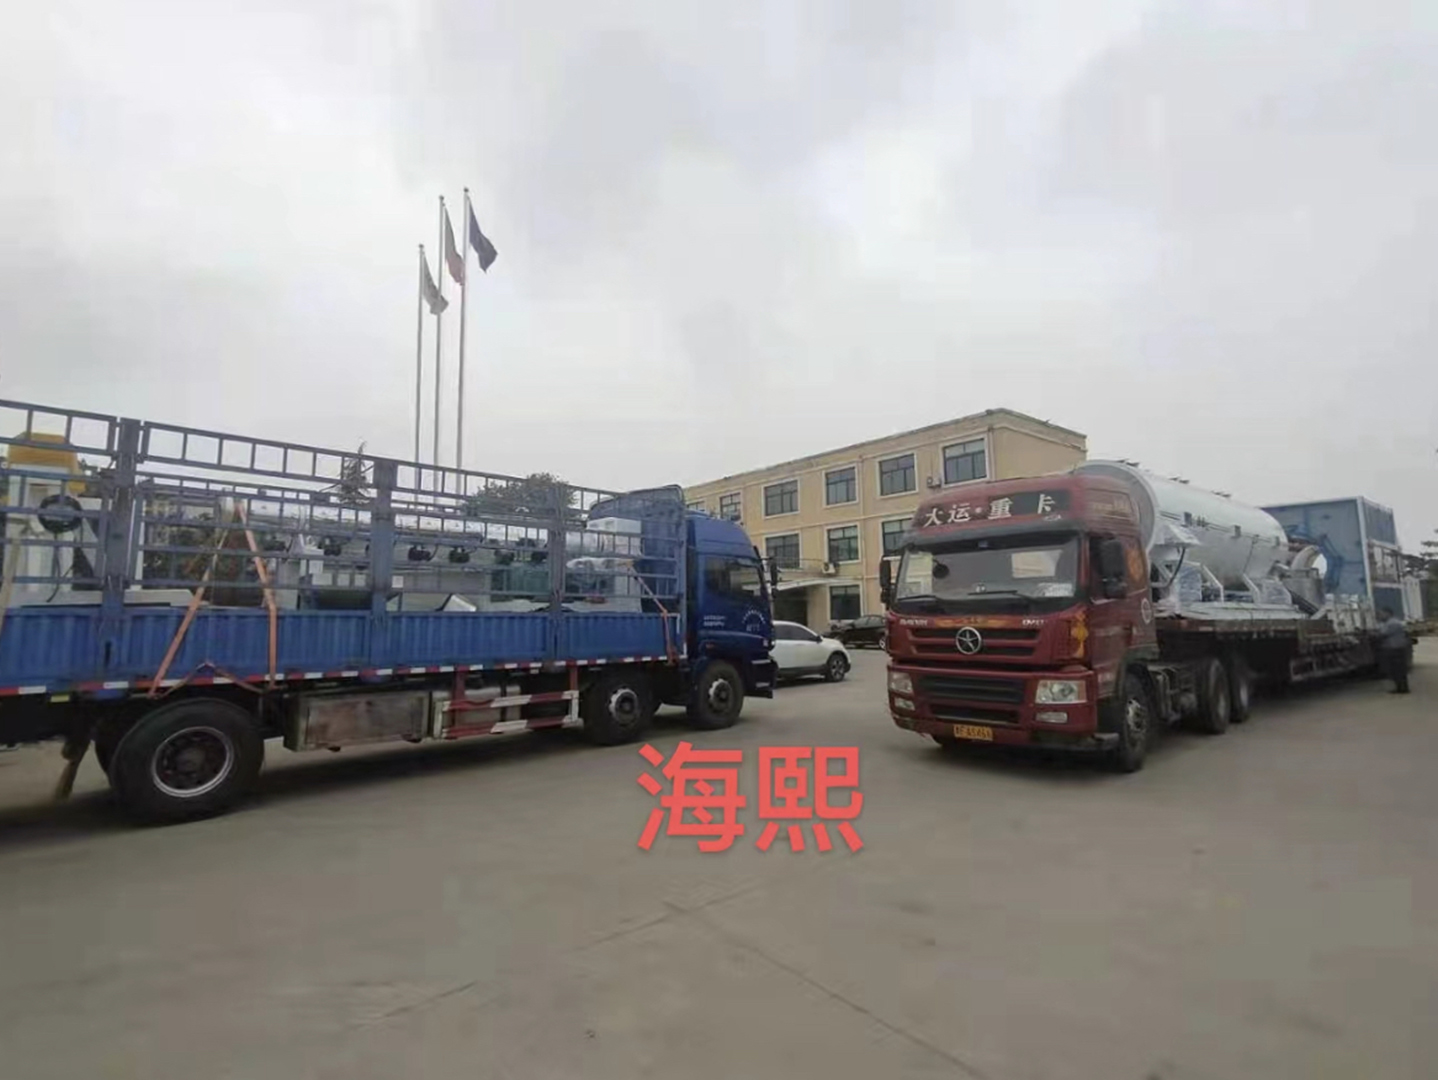 Shandong Wanshun Construction Co., Ltd